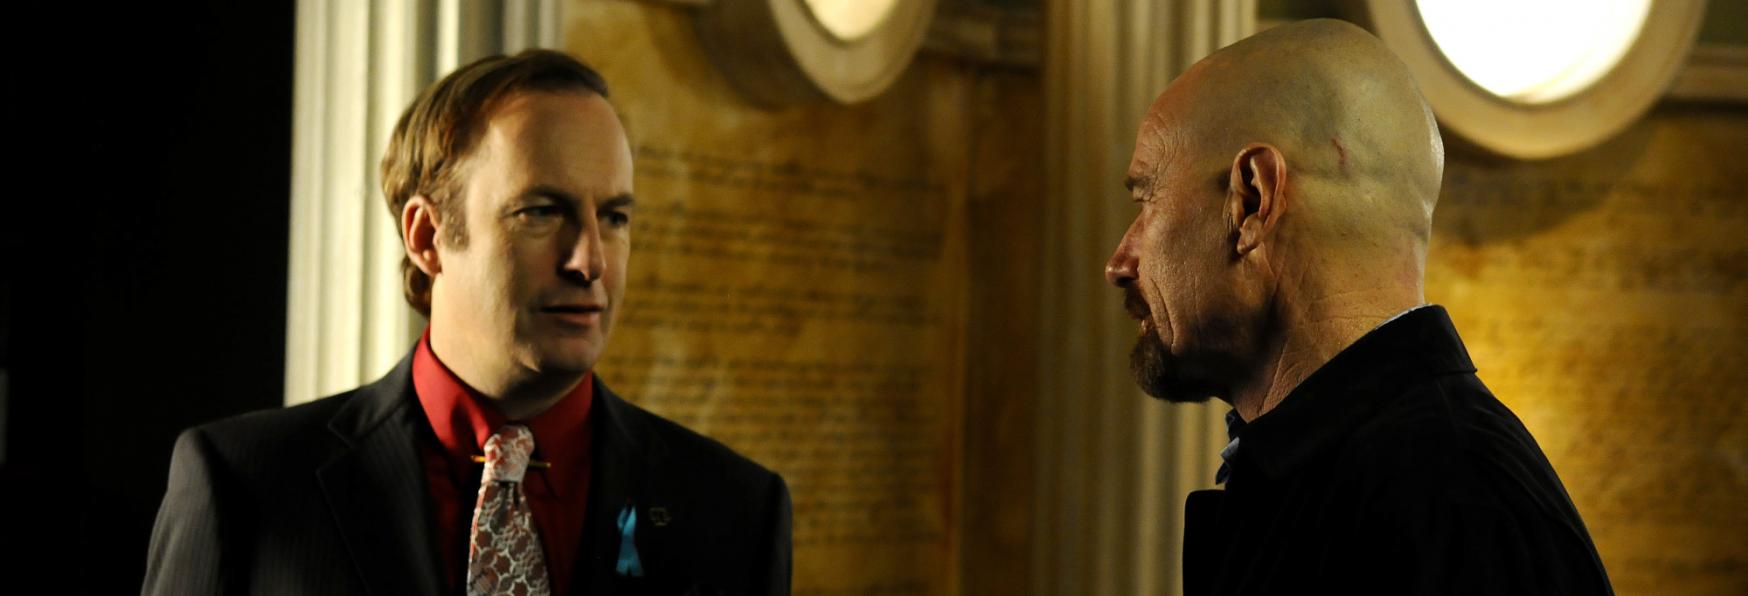 Better Call Saul 6: la Clip di AMC consiglia caldamente un Rewatch di Breaking Bad